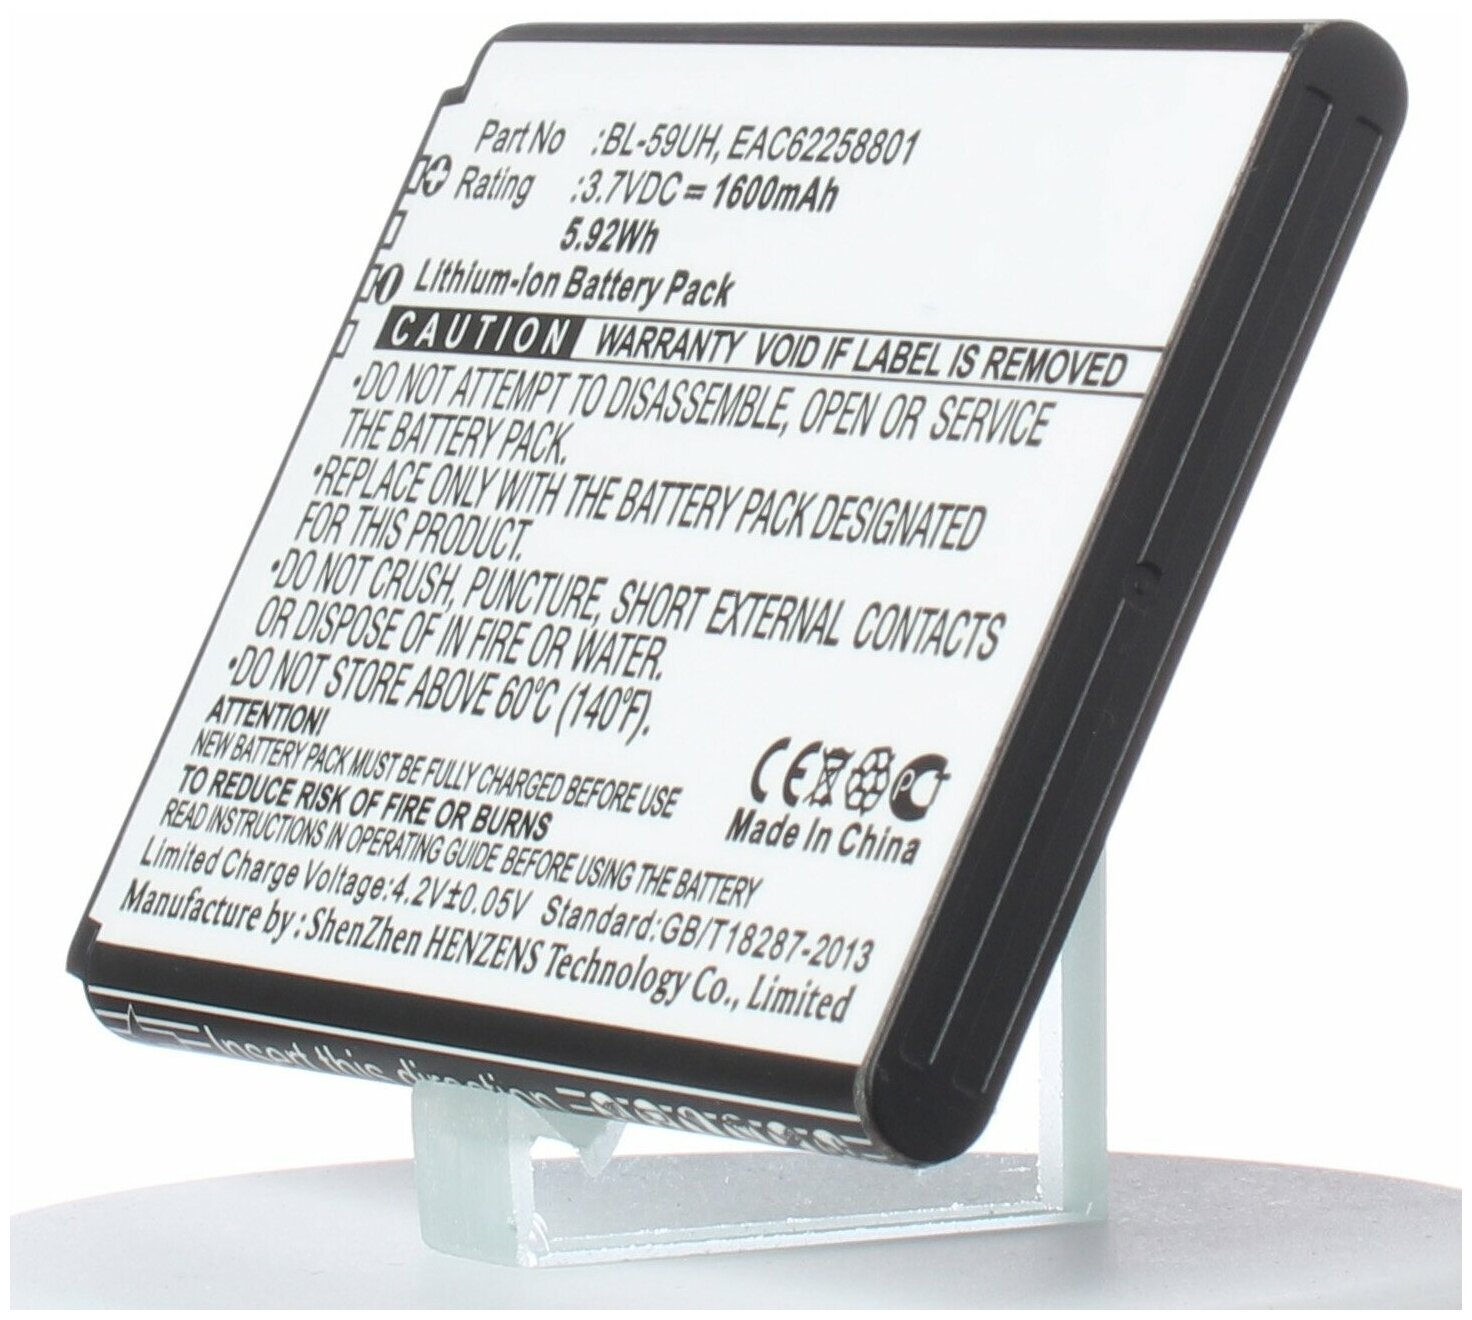 Аккумулятор iBatt iB-U1-M768 1600mAh для LG D320, G2 mini, D620R, D620K, Optimus G2 Mini, D315, D620, D620J, D618 Optimus G2 Mini, D620 Optimus G2 Mini,